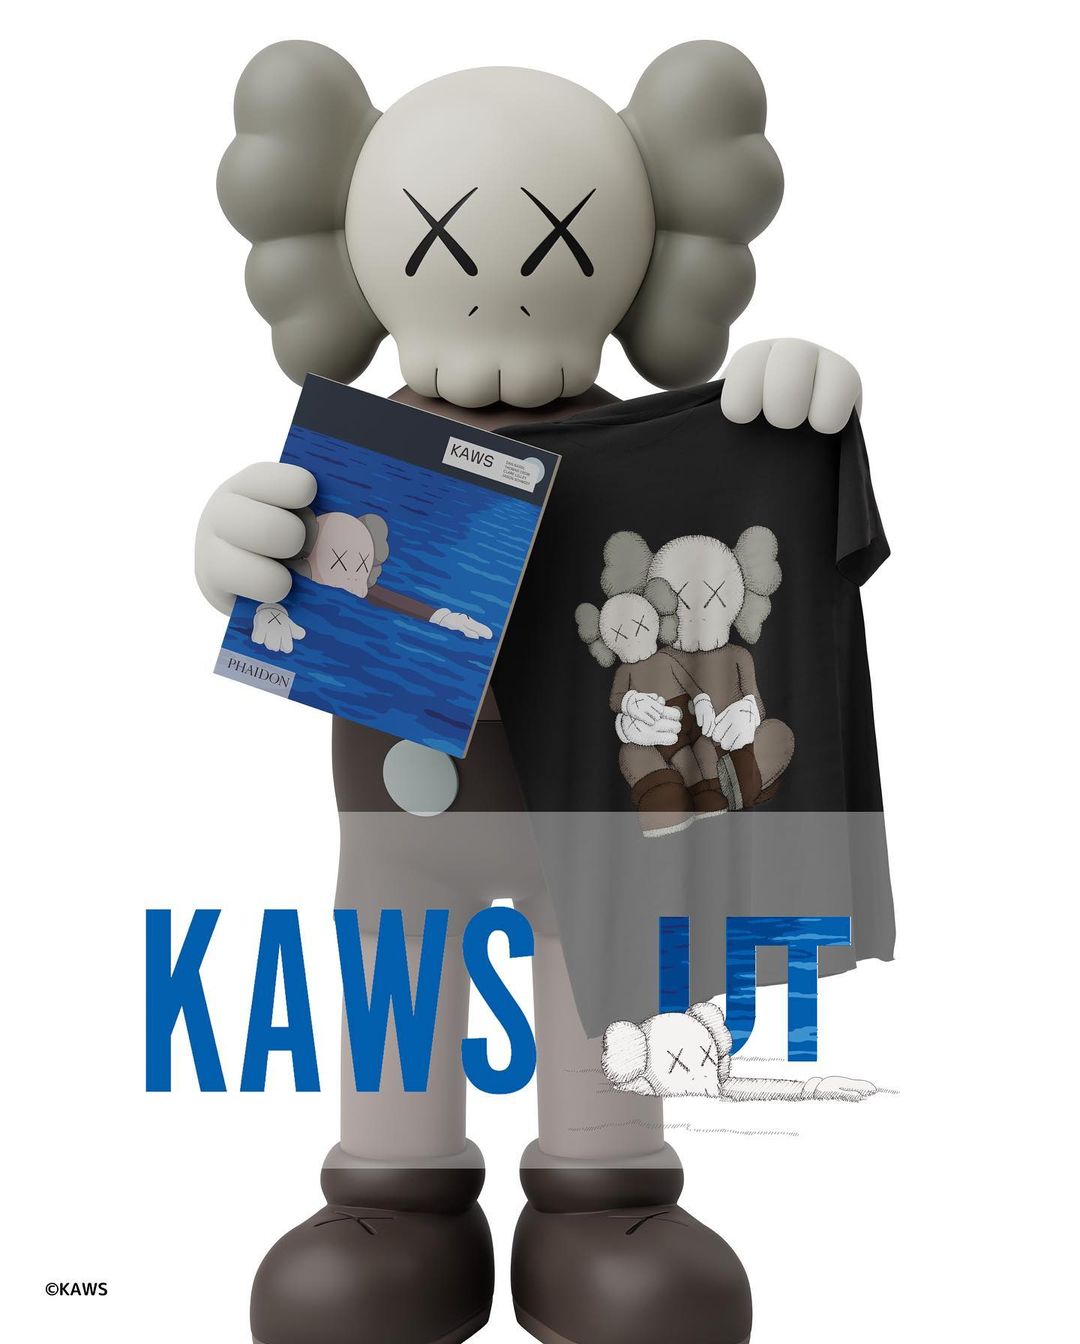 【国内 9/8 発売】KAWS x UNIQLO 2023 NEW PROJECT (カウズ ユニクロ)